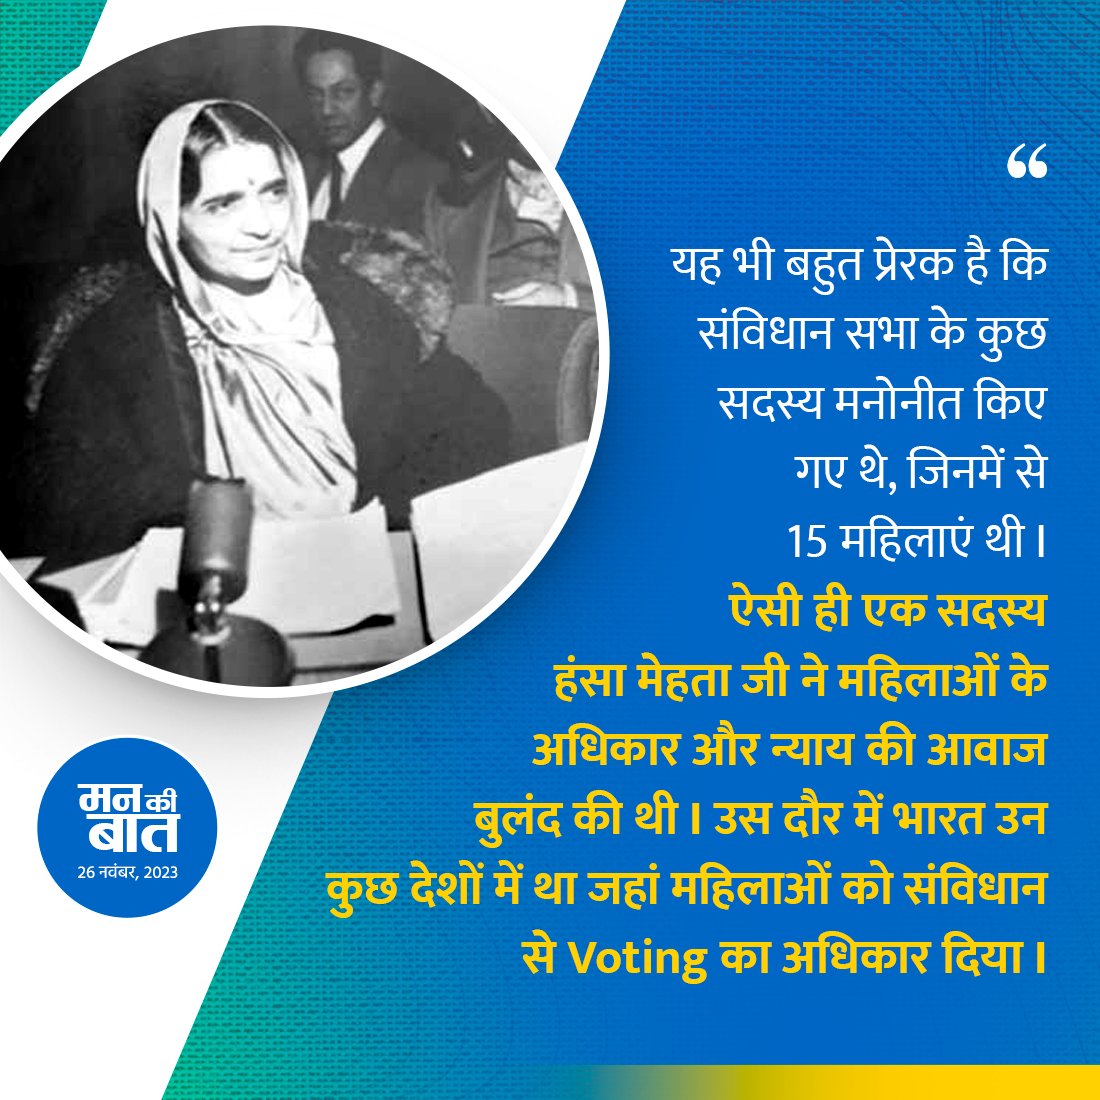 यह भी बहुत प्रेरक है कि संविधान सभा के कुछ सदस्य मनोनीत किए गए थे, जिनमें से 15 महिलाएं थी। ऐसी ही एक सदस्य हंसा मेहता जी ने महिलाओं के अधिकार और न्याय की आवाज बुलंद की थी। उस दौर में भारत उन कुछ देशों में था, जहां महिलाओं को संविधान से Voting का अधिकार दिया। #MannKiBaat